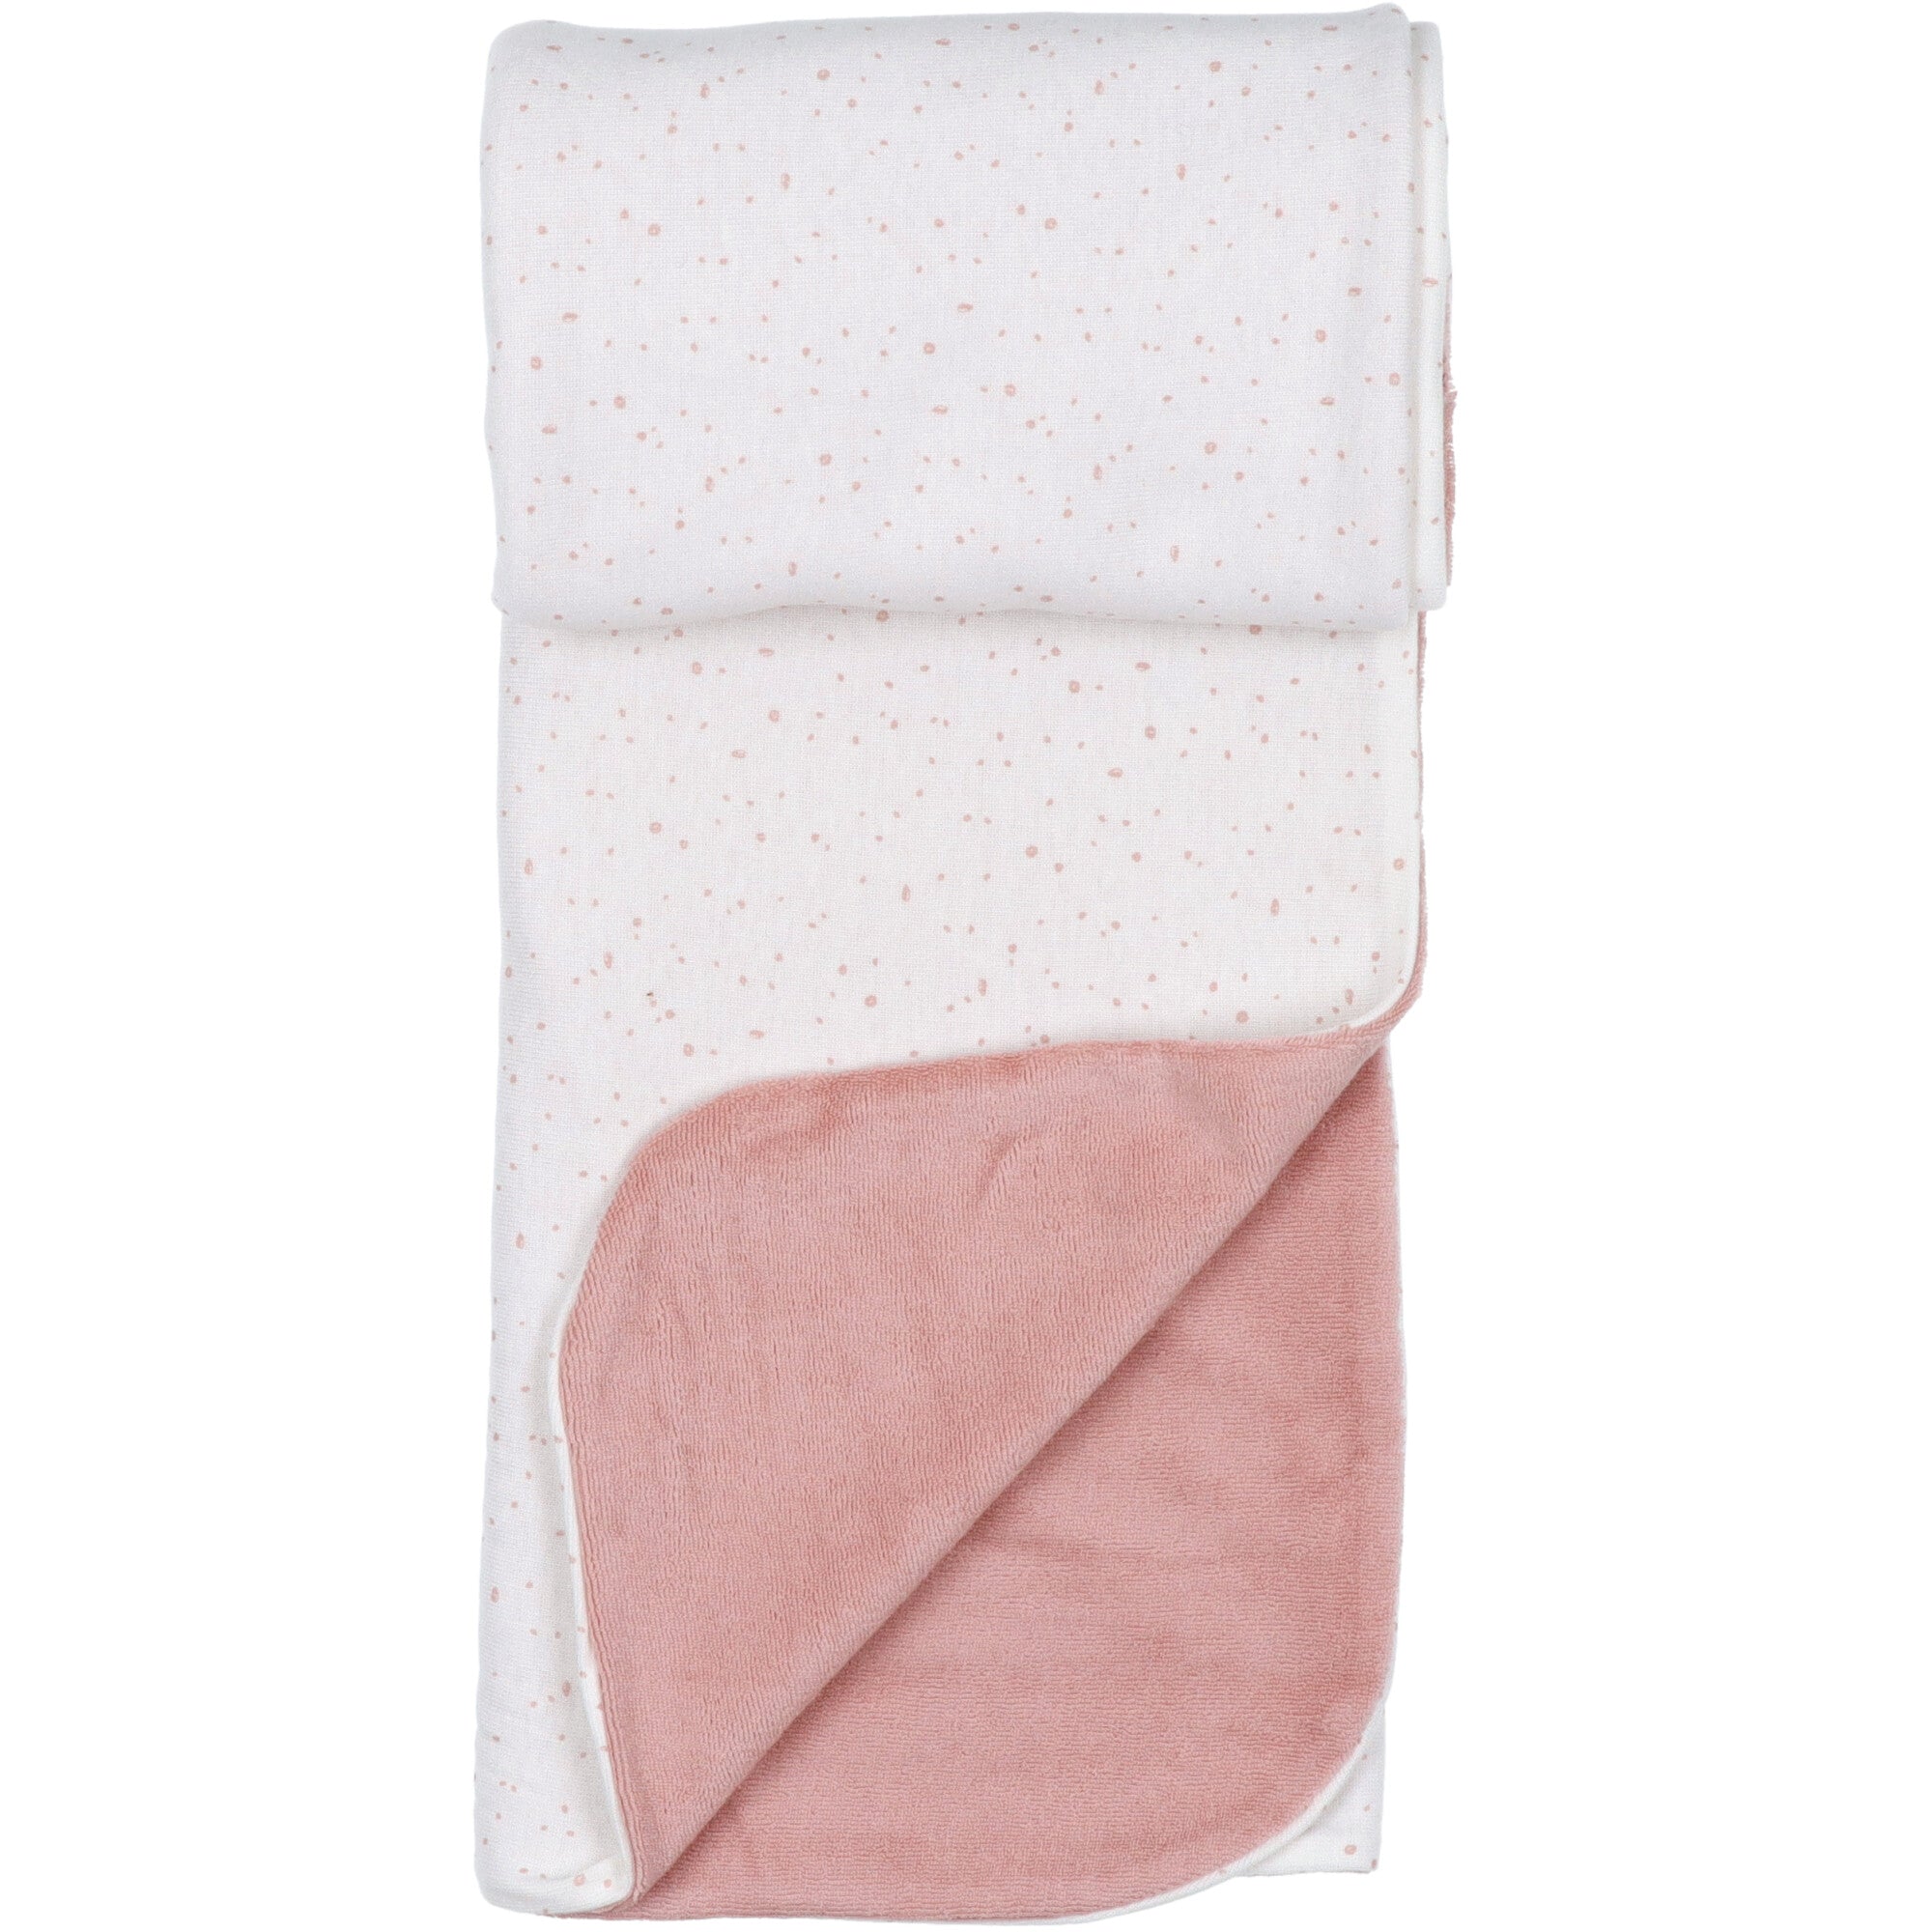 coperta-reversibile-jersey-e-spugna-rosa